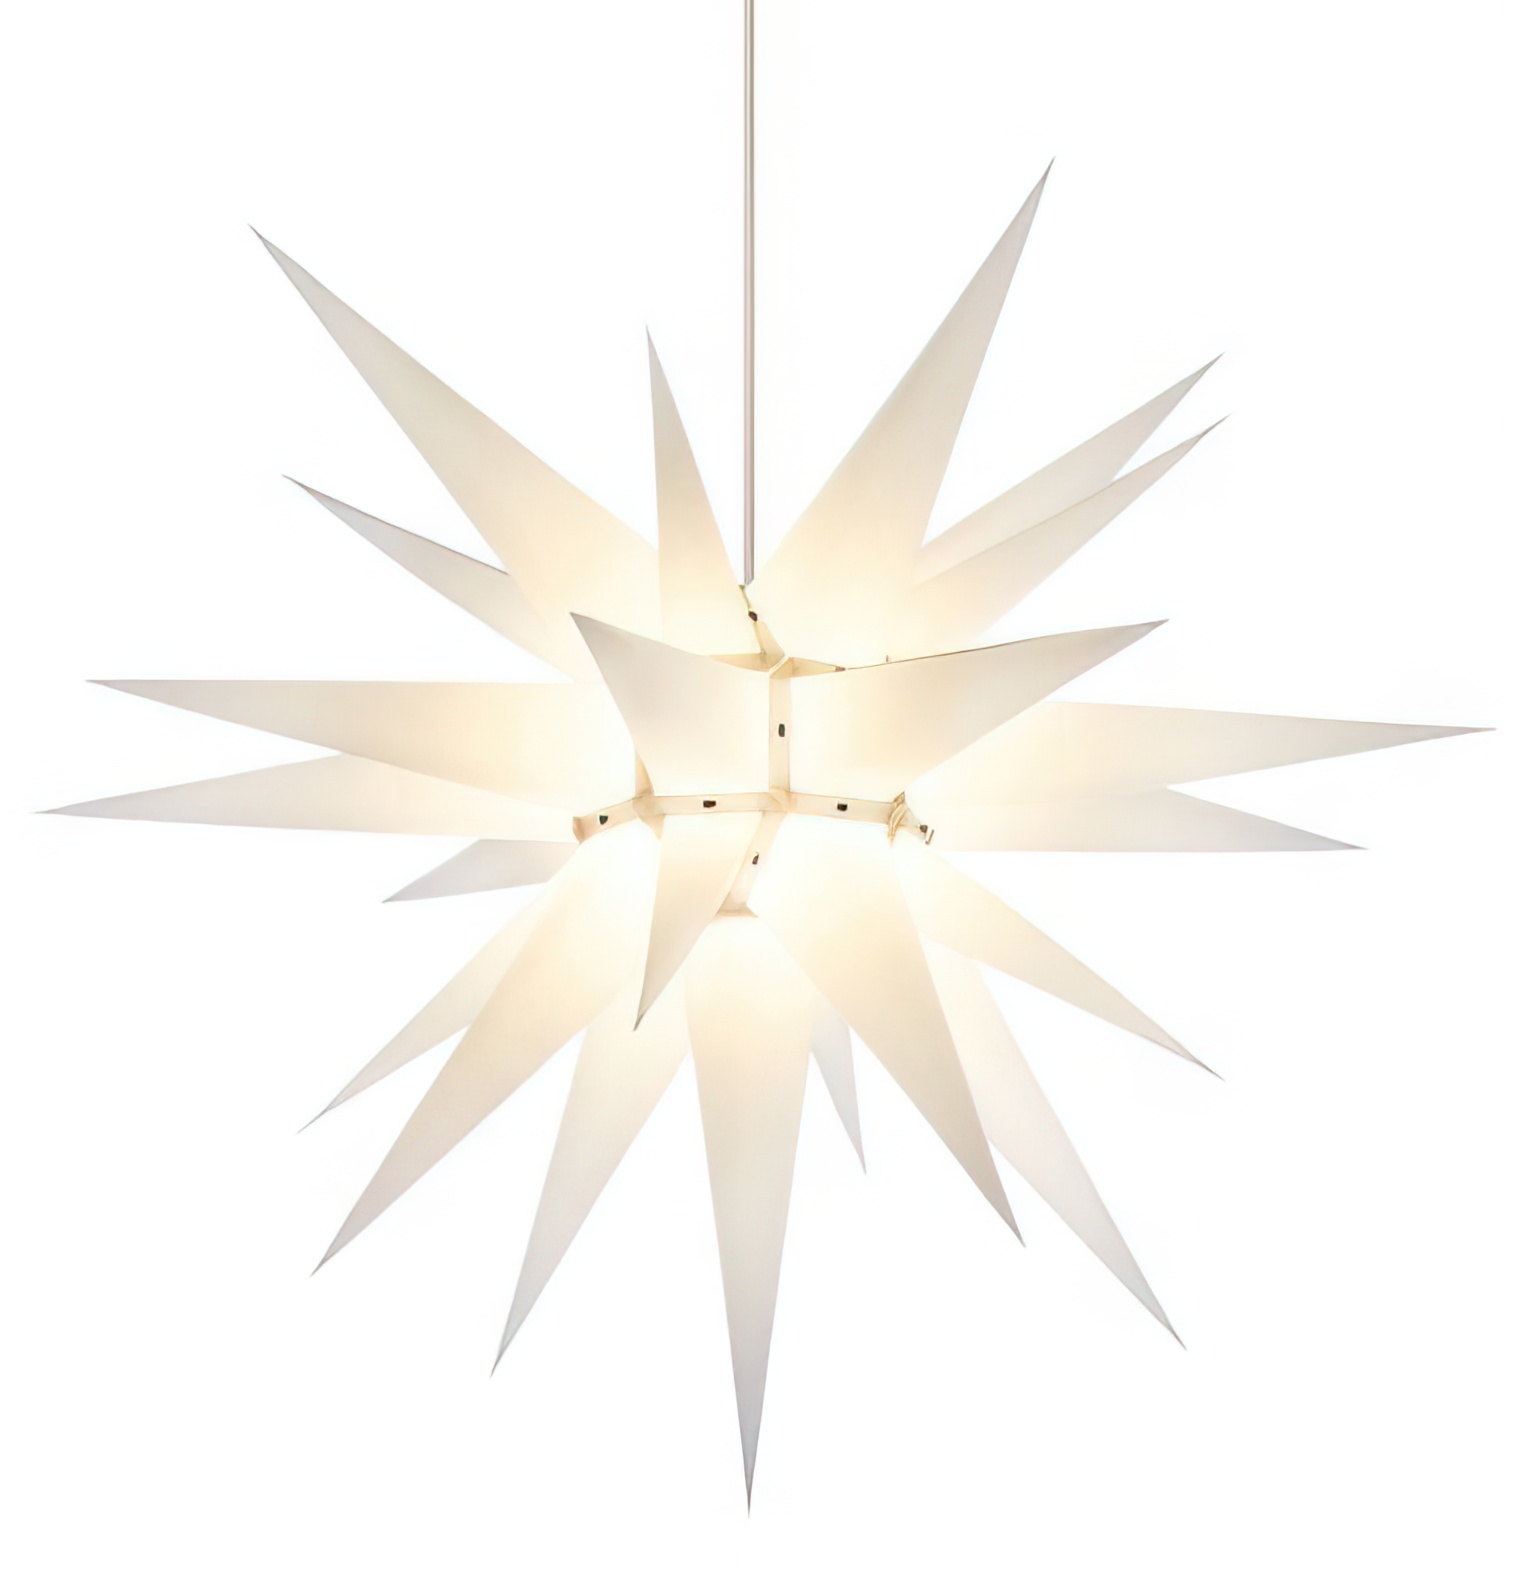 Herrnhuter Stern i7 (Bausatz) Ø 70 cm Papierstern - weiß Wunderschöner und sehr hochwertiger Weihnachtsstern für Innen/Indoor - das Original mit 25 Zacken